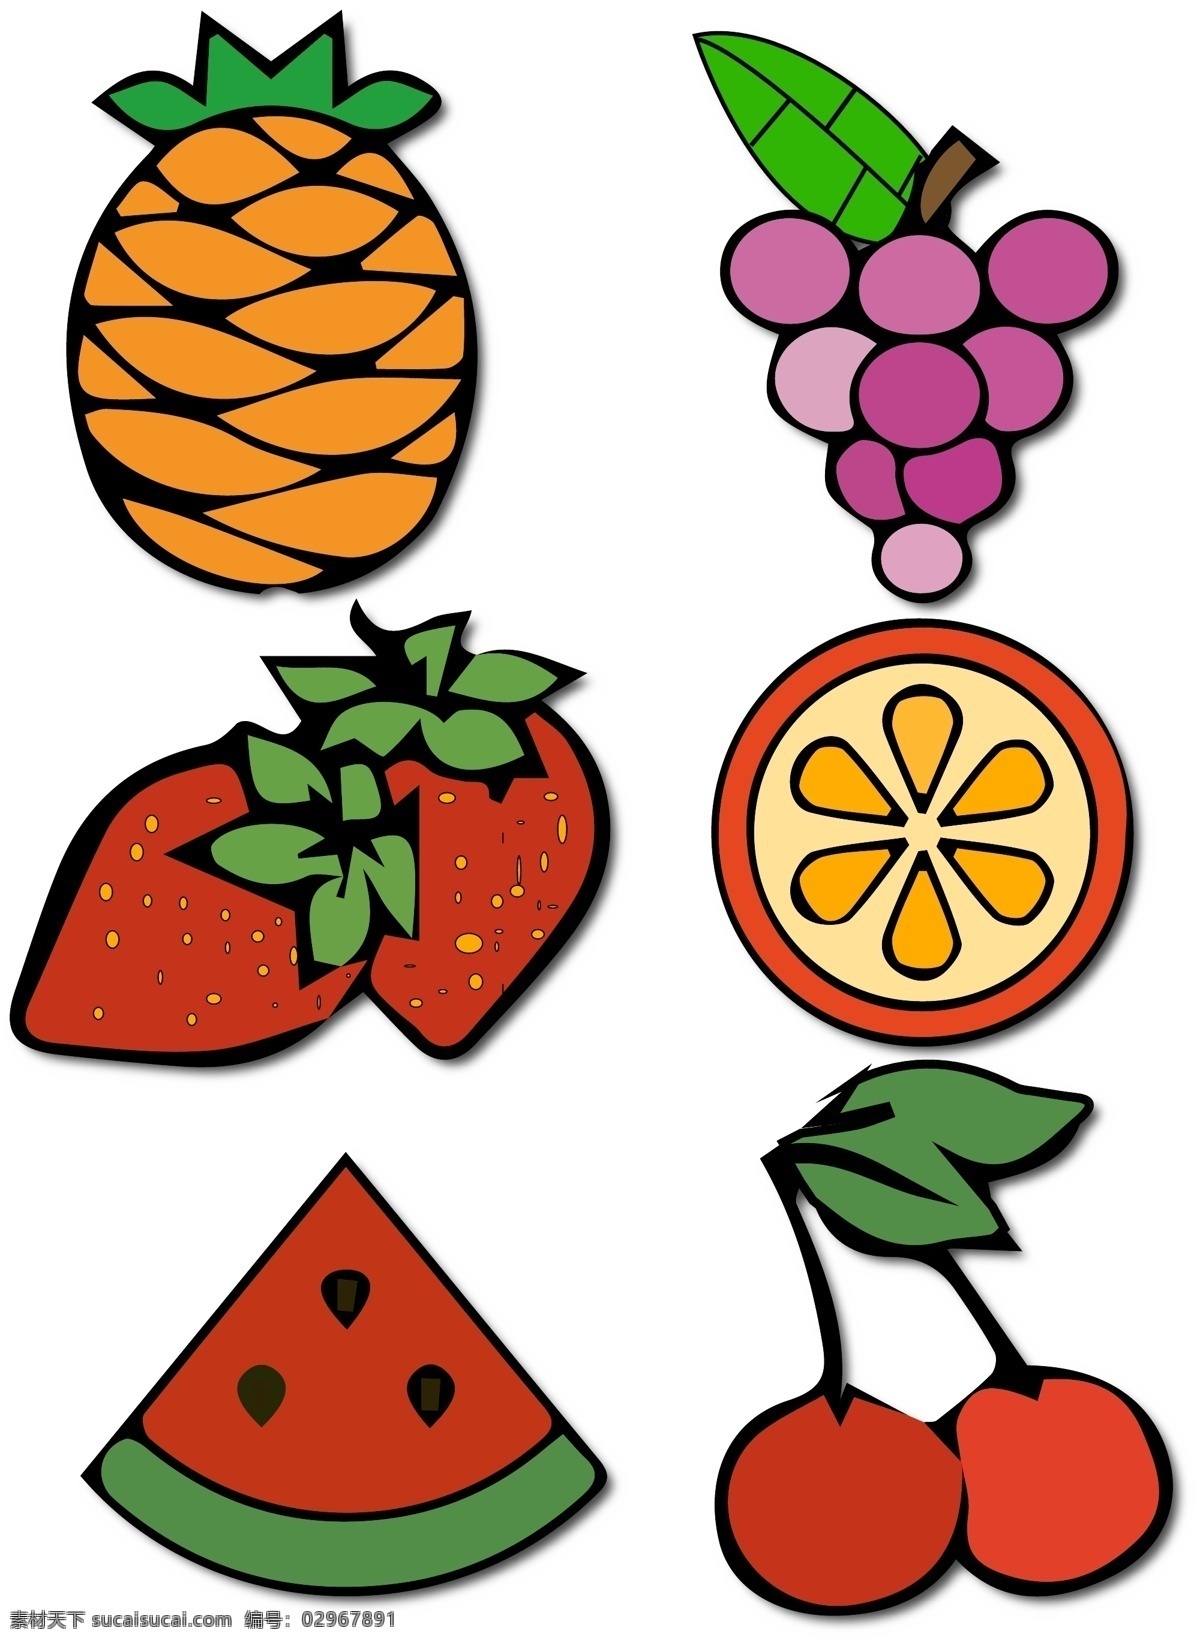 各种 水果 套 图 模板 商用 草莓 葡萄 卡通 可爱 橙子 菠萝 西瓜